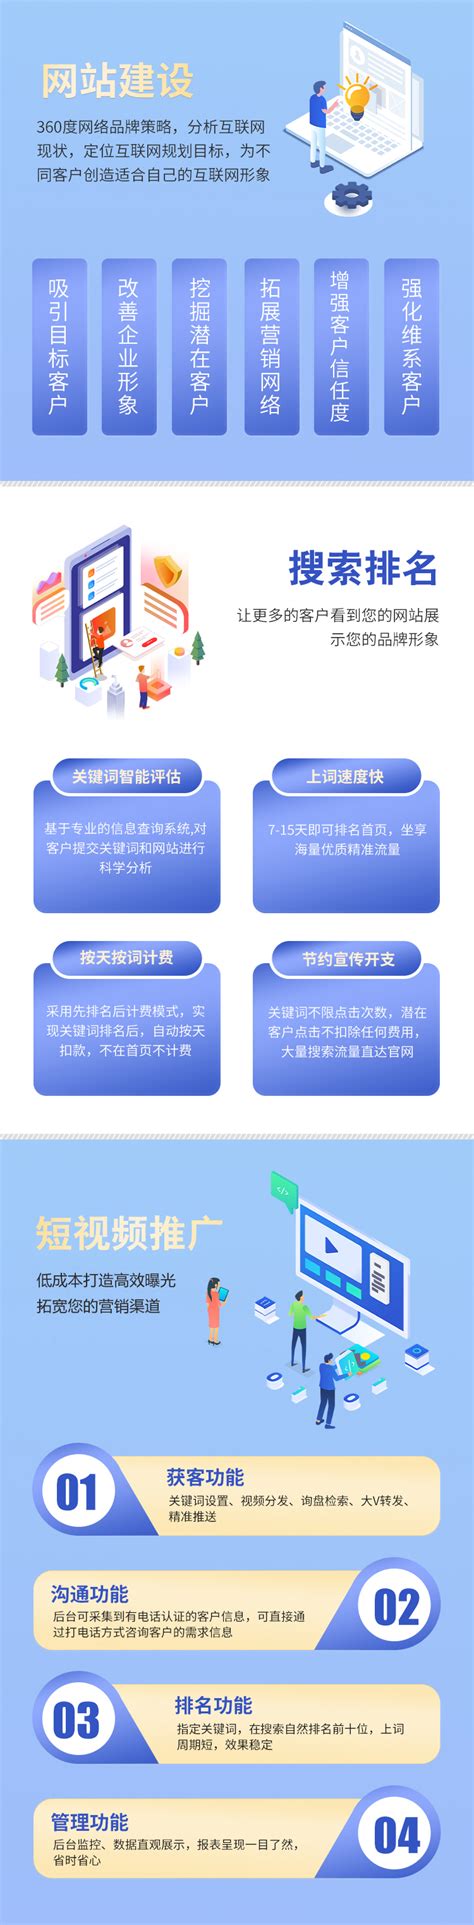 重庆企业网站建设推广服务